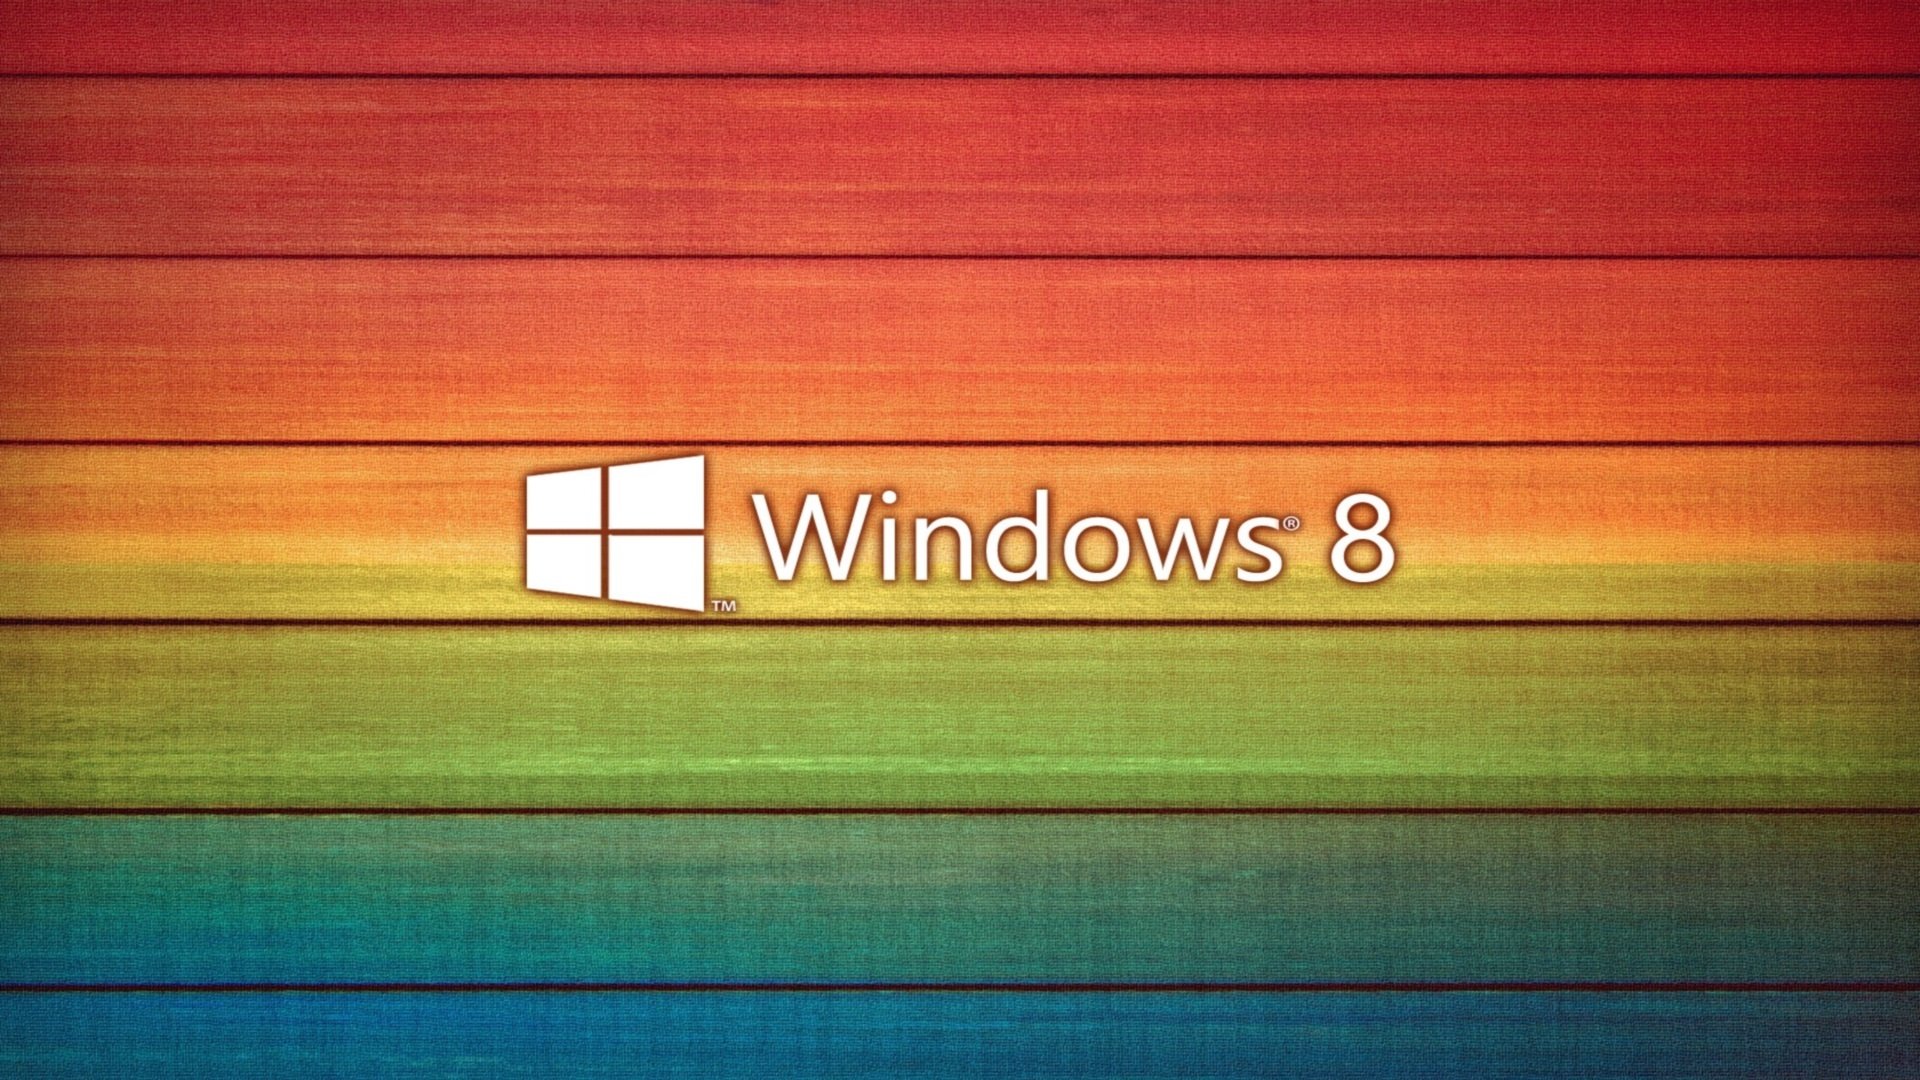 Похоже на то, что тема настройки пользовательского интерфейса Windows 8 исчерпала себя По крайней мере, это справедливо в отношении “старой”, если можно